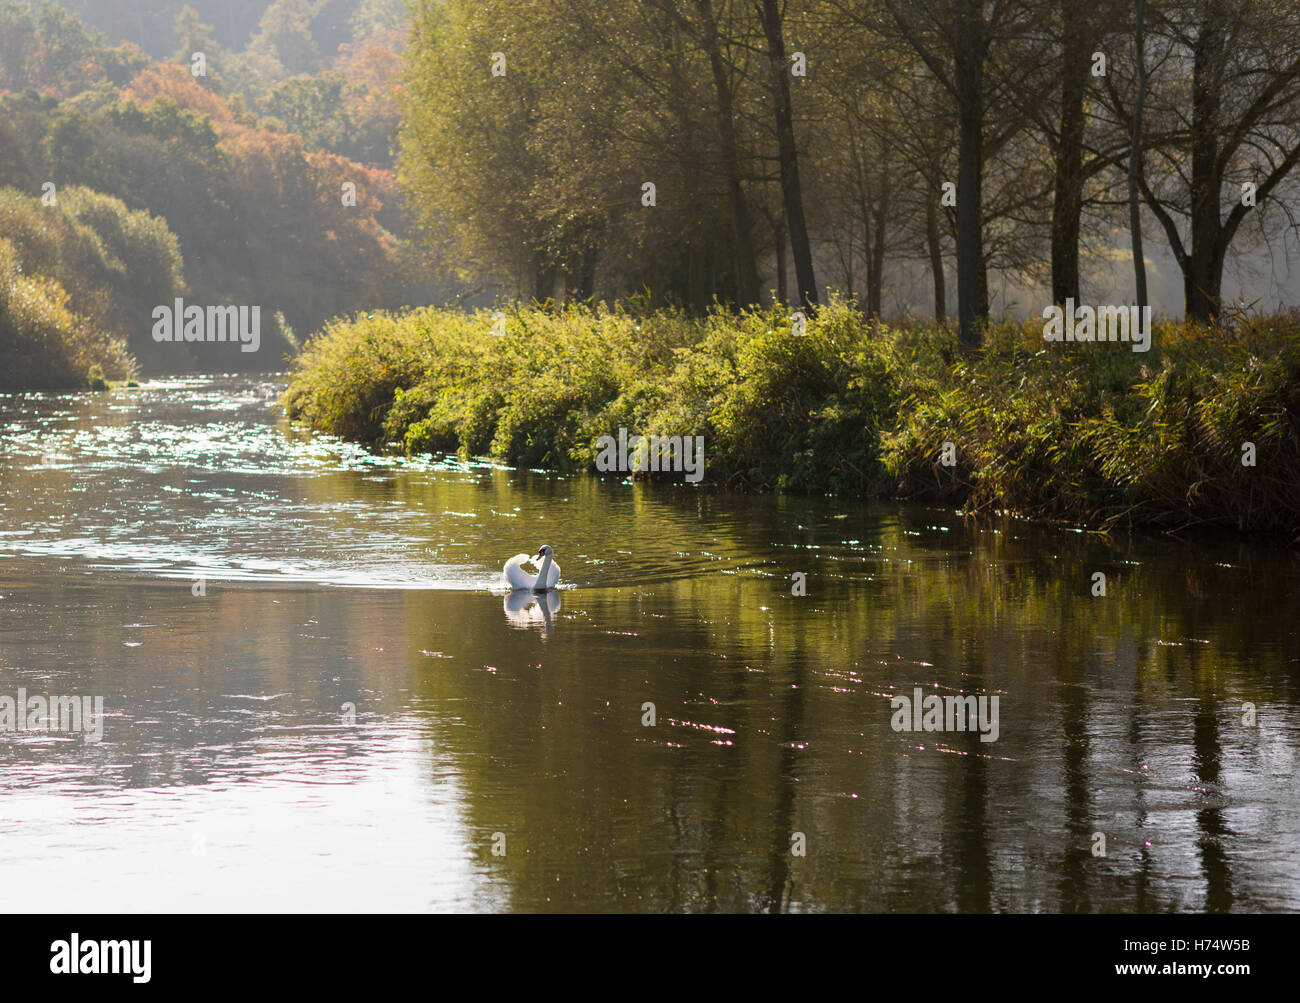 Immacolate swan galleggiando giù come un vetro fiume. Foto Stock